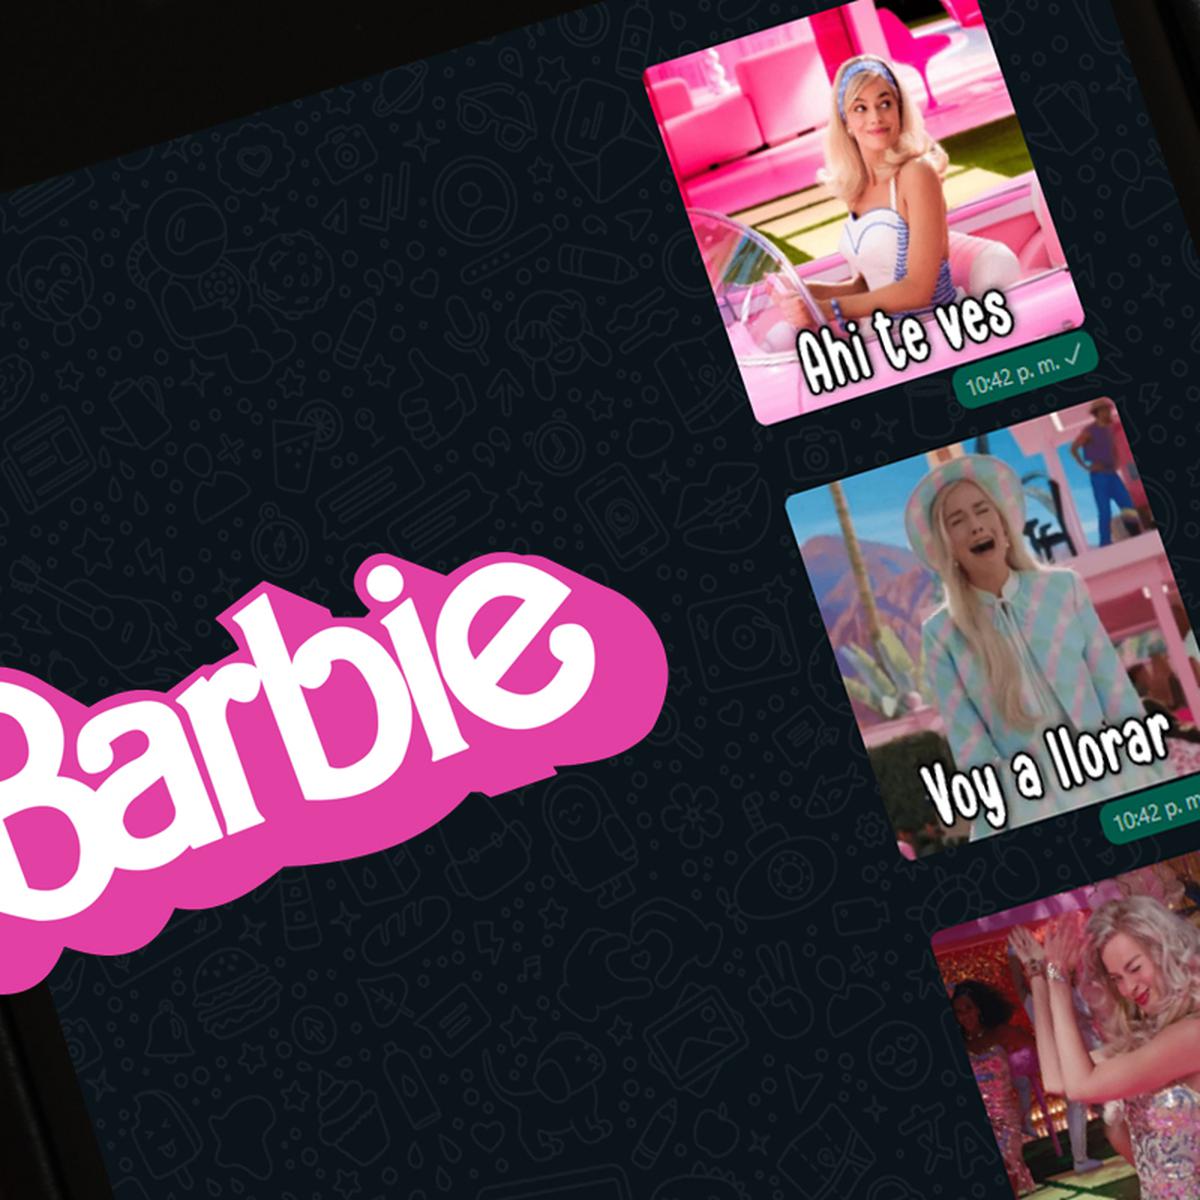 WhatsApp: descarga gratis mejores stickers barbie película 2023, DATA